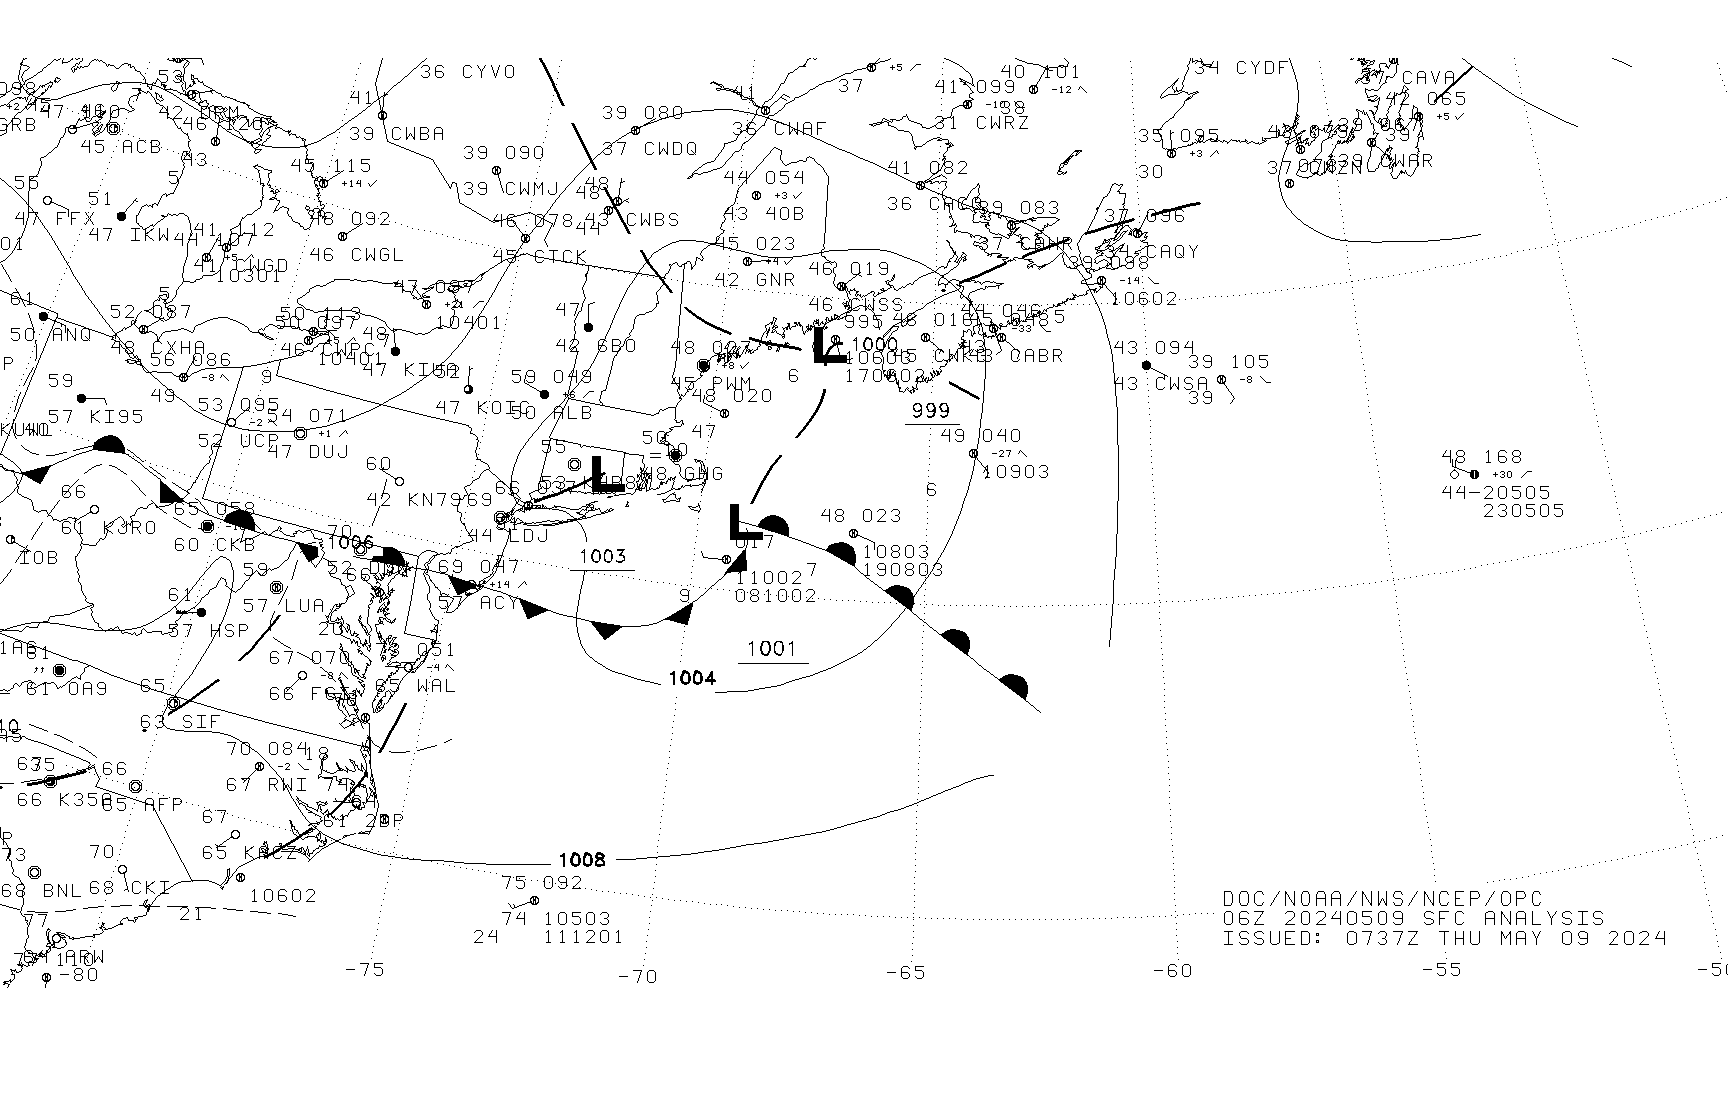 Preliminary Atlantic surface analysis 